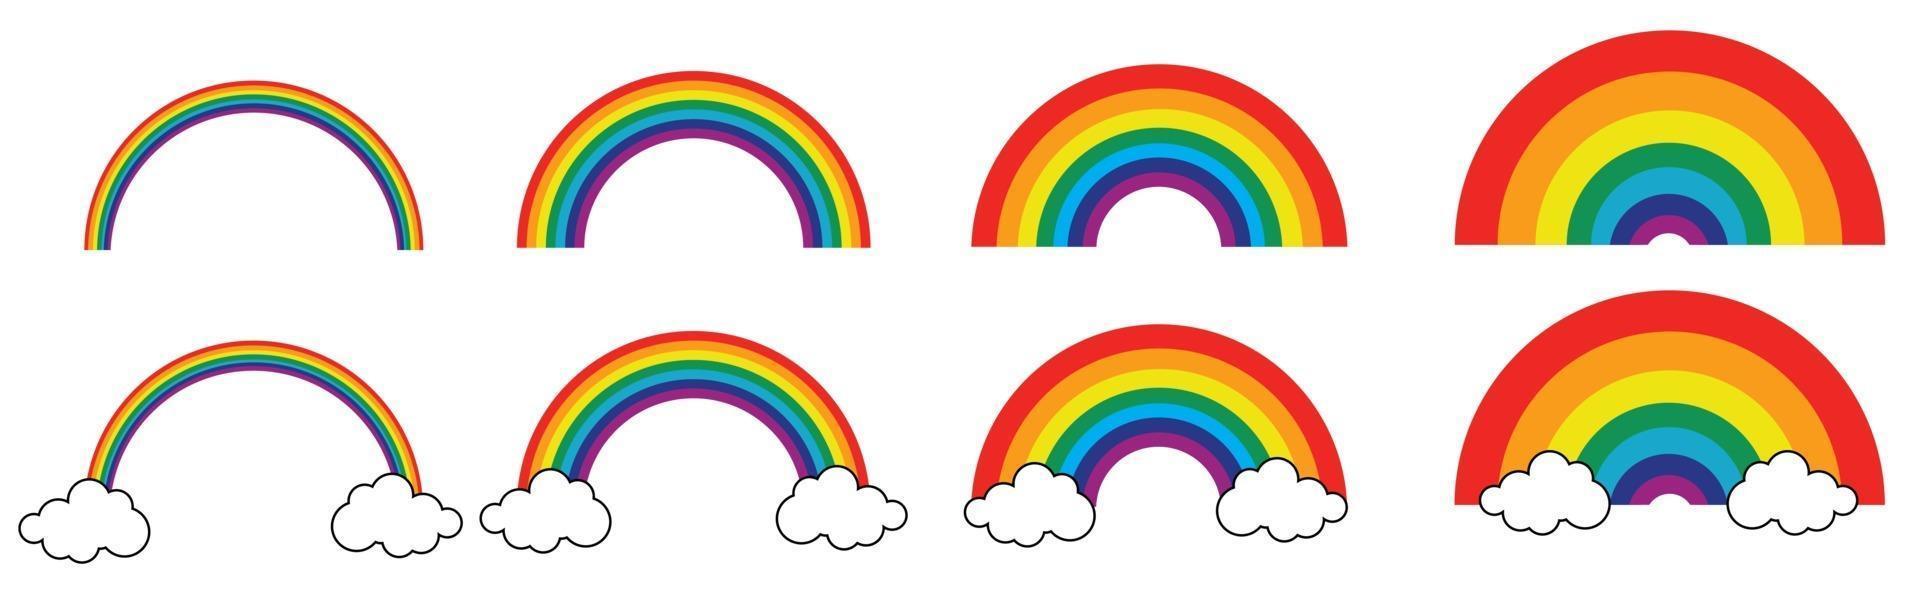 conjunto de ícones coloridos de arco-íris. coleção arco-íris clássico. vetor